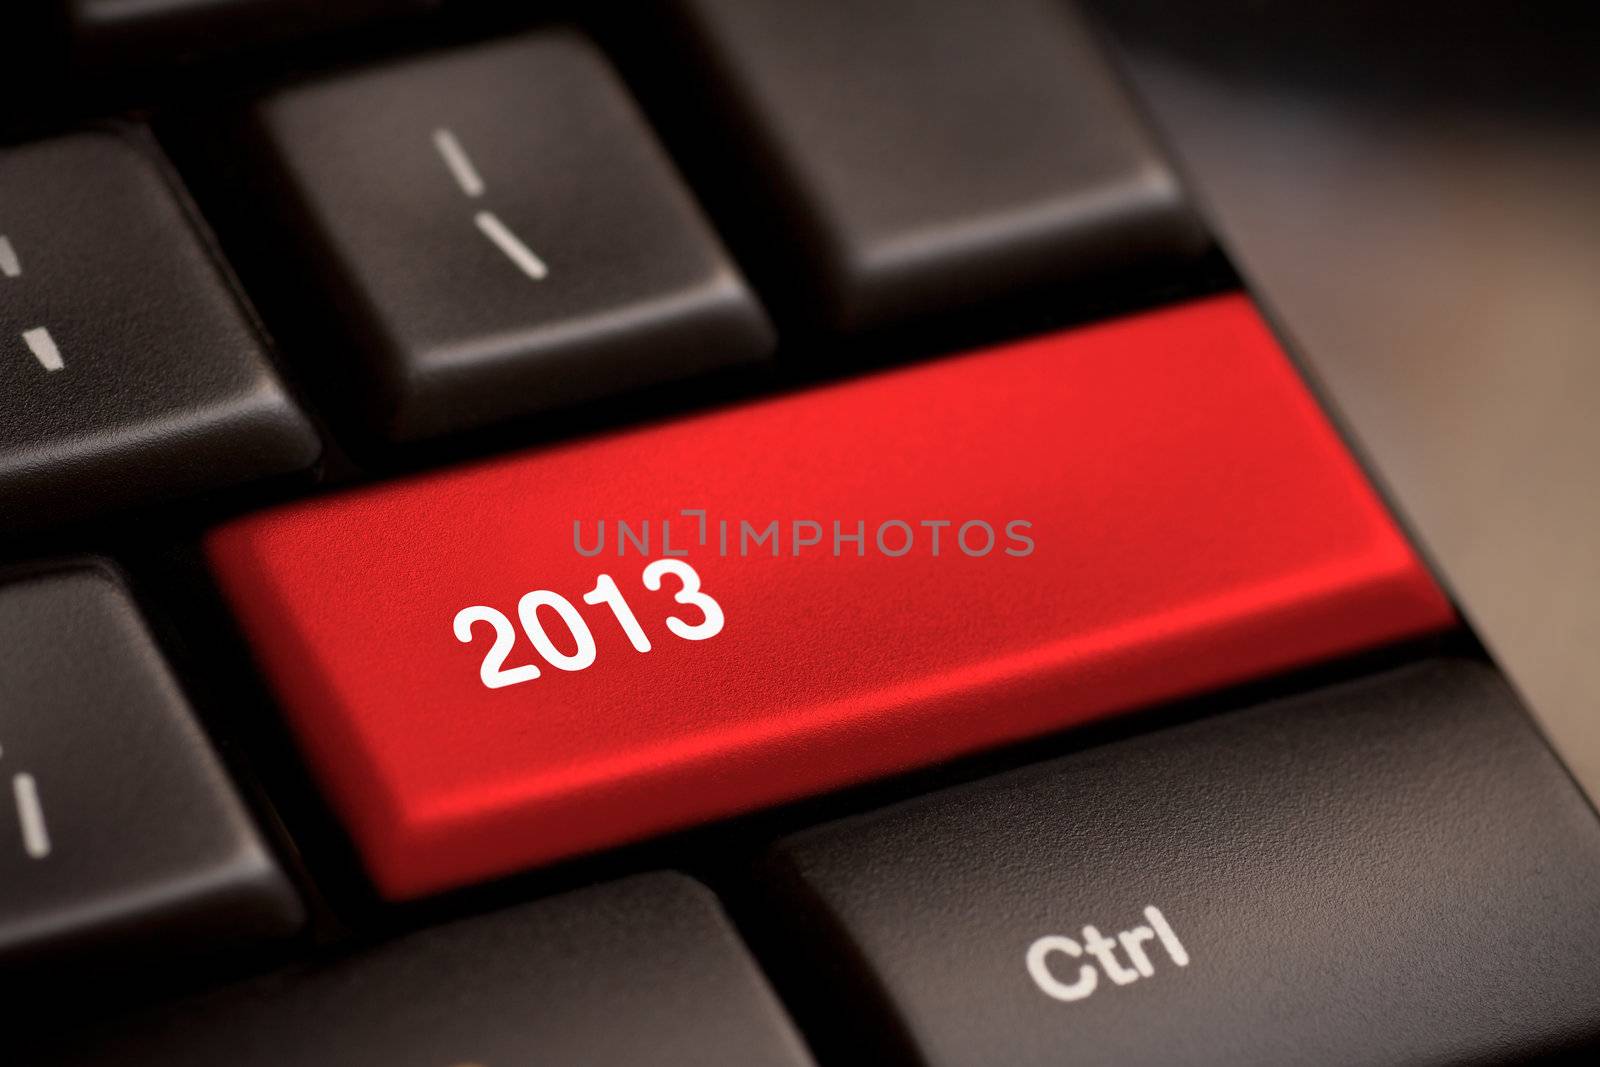 2013 Key On Keyboard. New year.